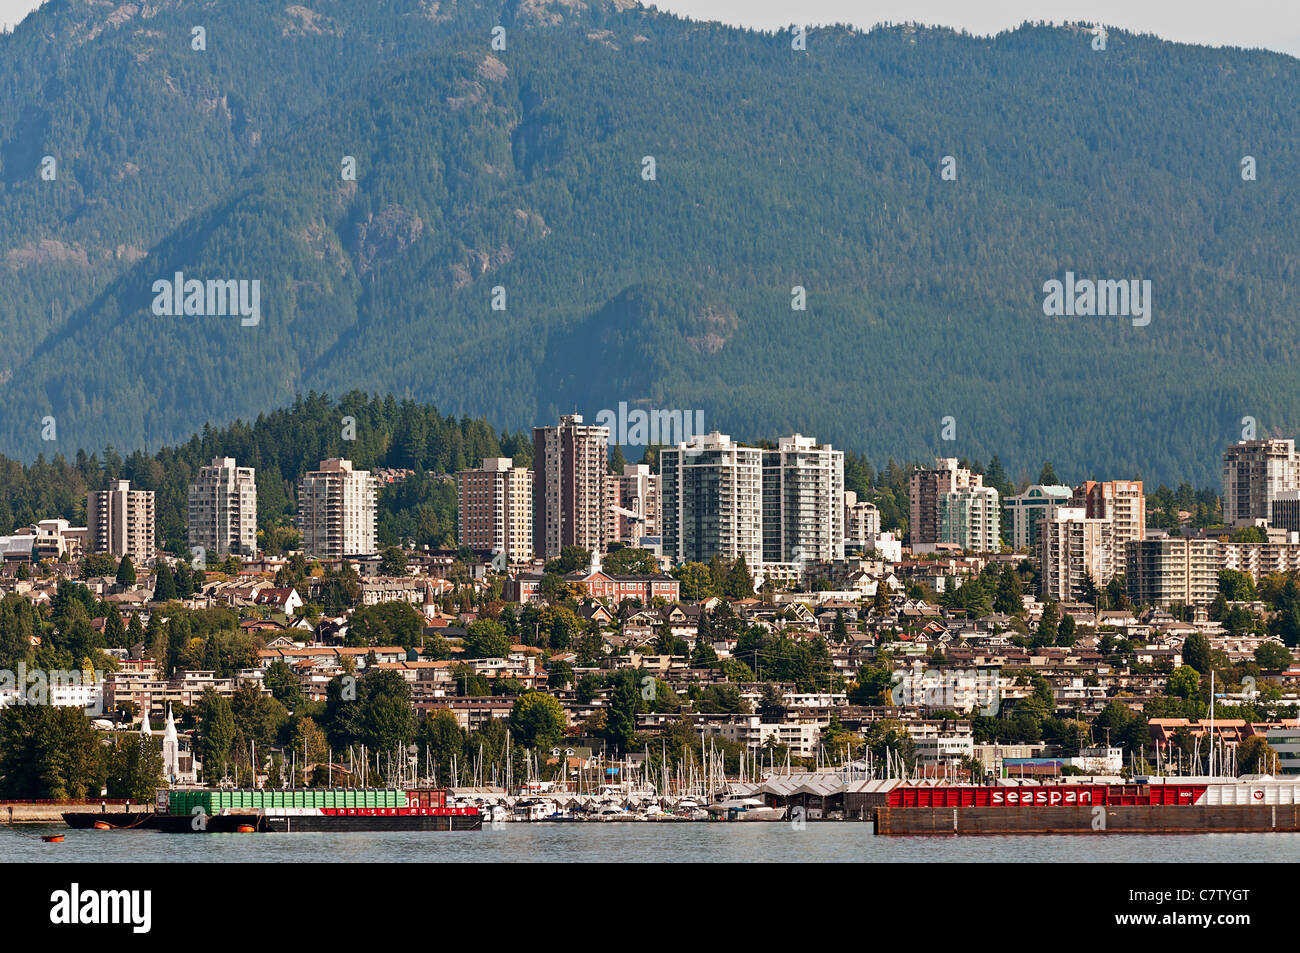 Ein Blick auf die unteren Lonsdale-Bereich von North Vancouver, BC, Canada.The gezeigt North Shore Mountains bilden eine malerische Kulisse. Stockfoto